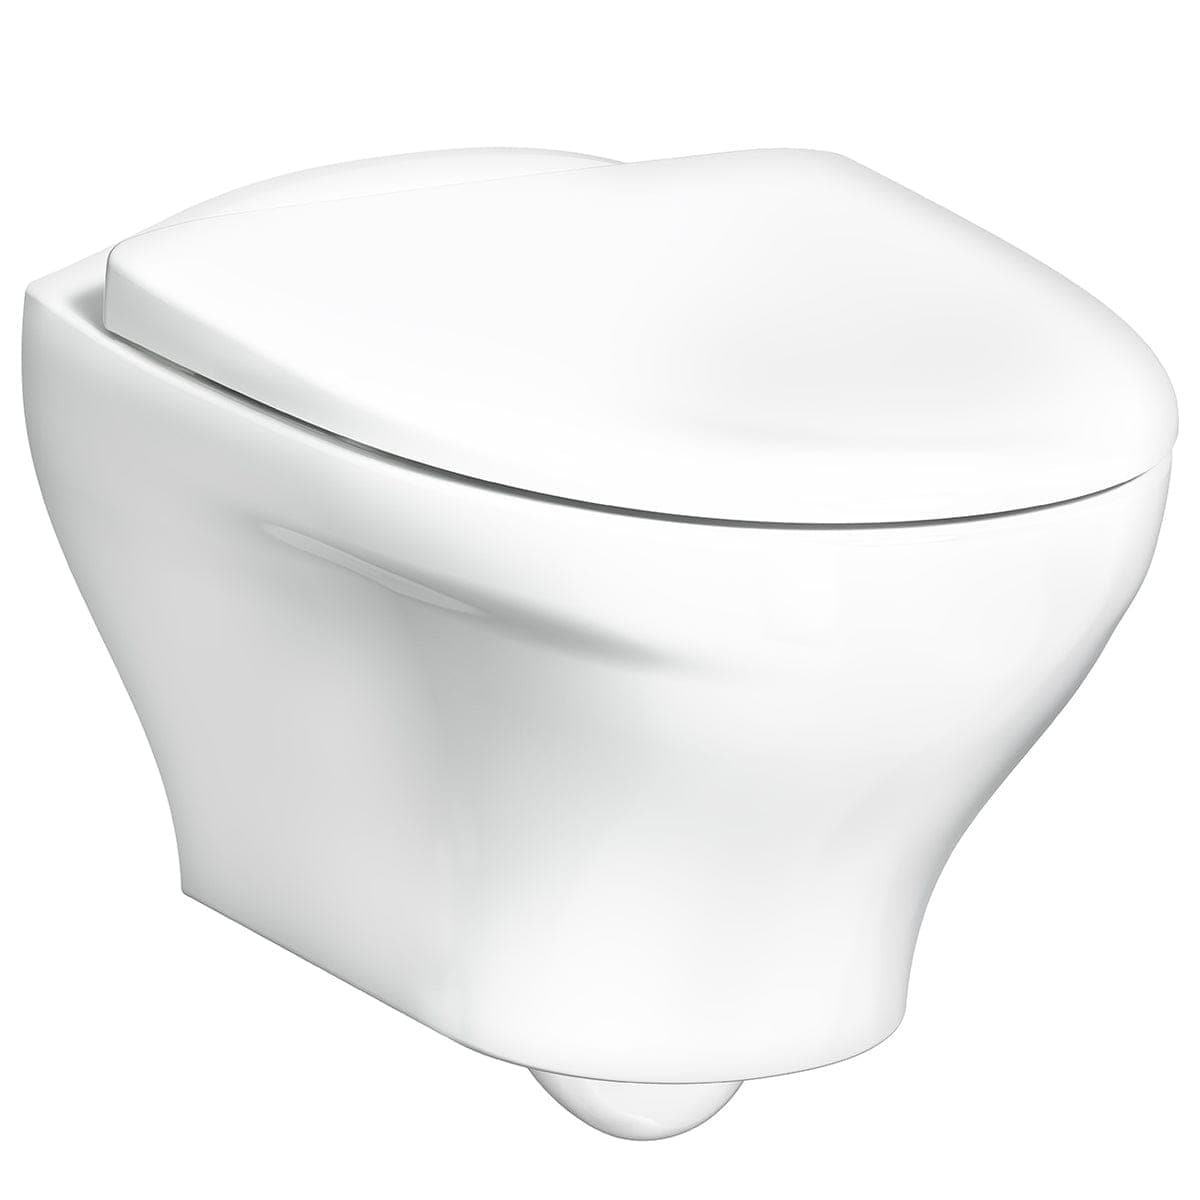 Gustavsberg Estetic 8330 HF Veggskål - Vegghengt Toalett Hvit Vegghengt toalett